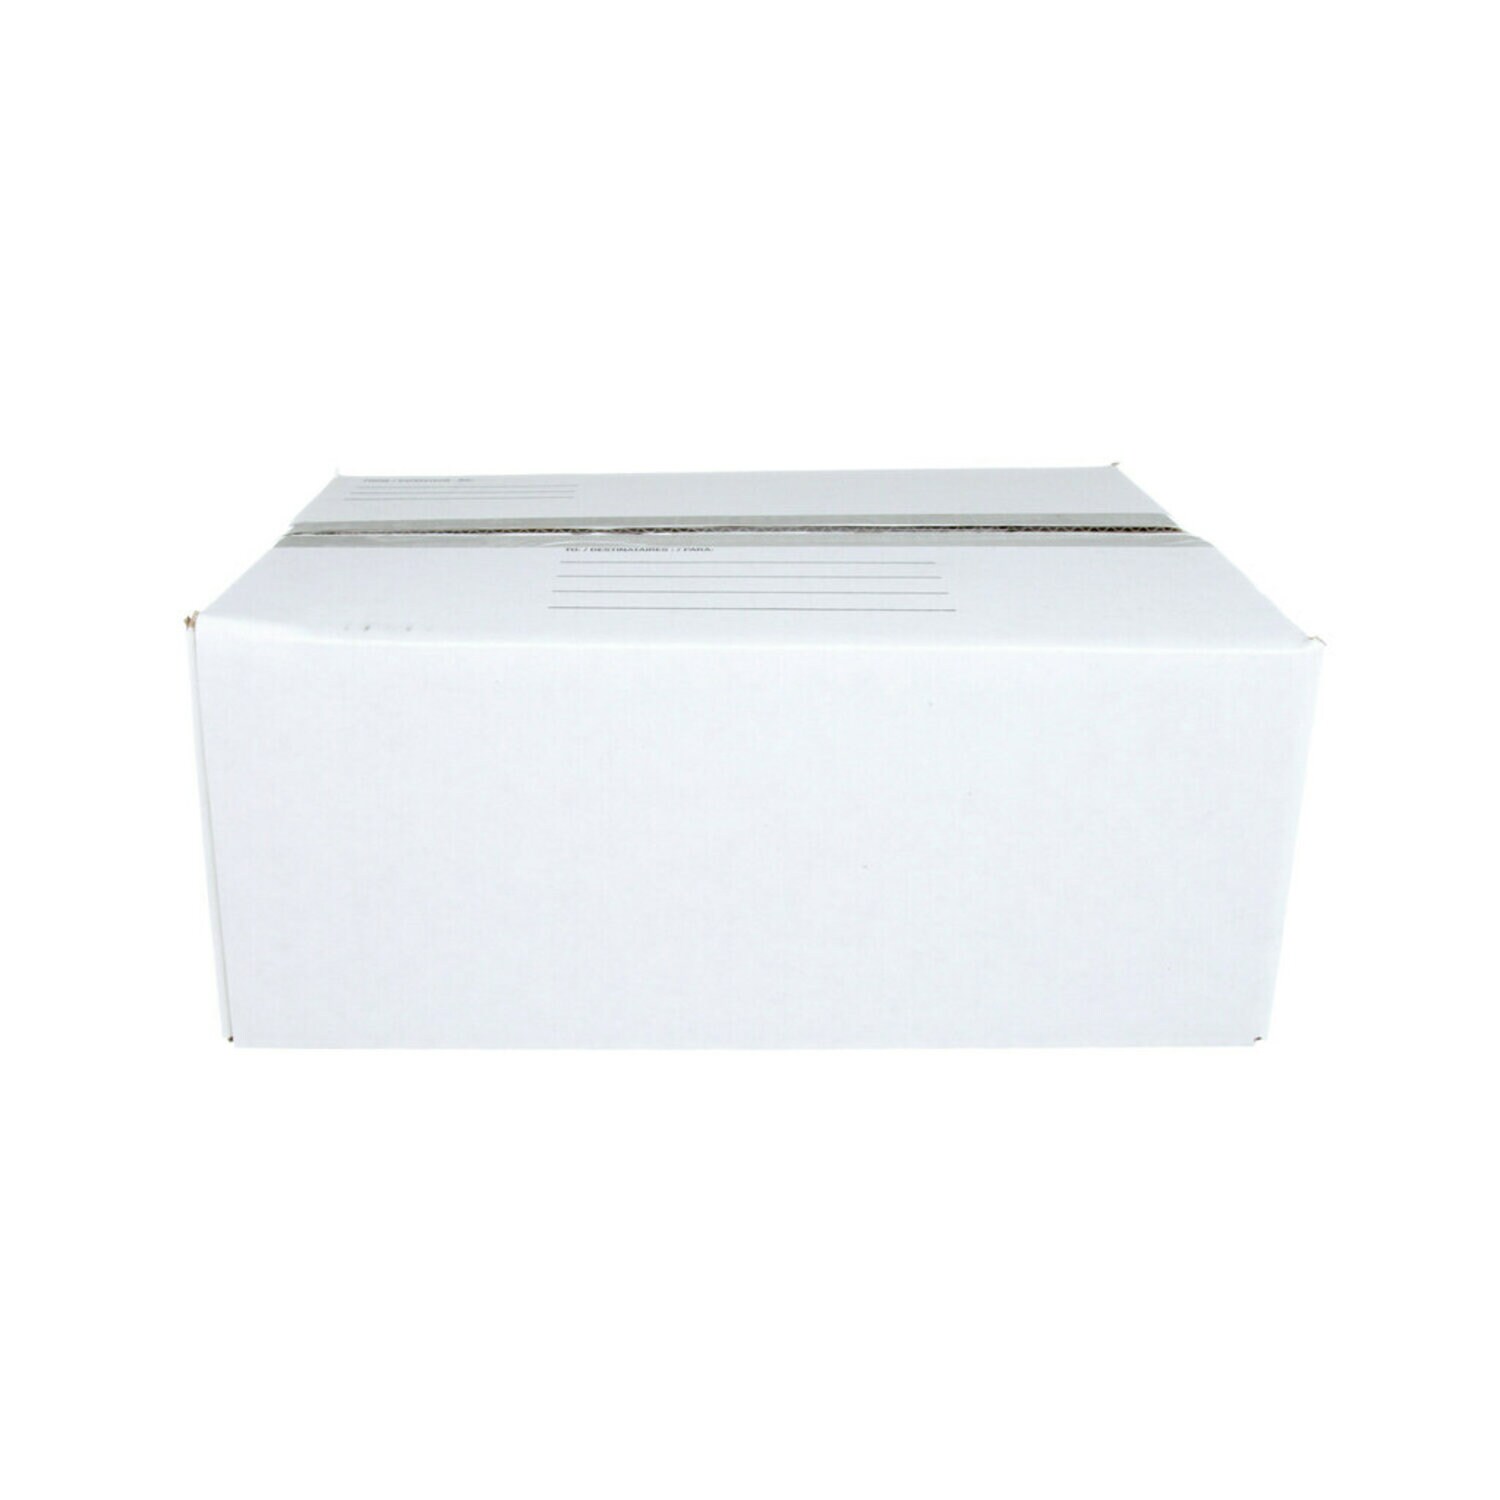 7100142165 - Scotch Mailing Box 8006-ESF, 14 in x 10 in x 5.5 in (35,5 cm x 25,4 cm
x 13,9 cm)